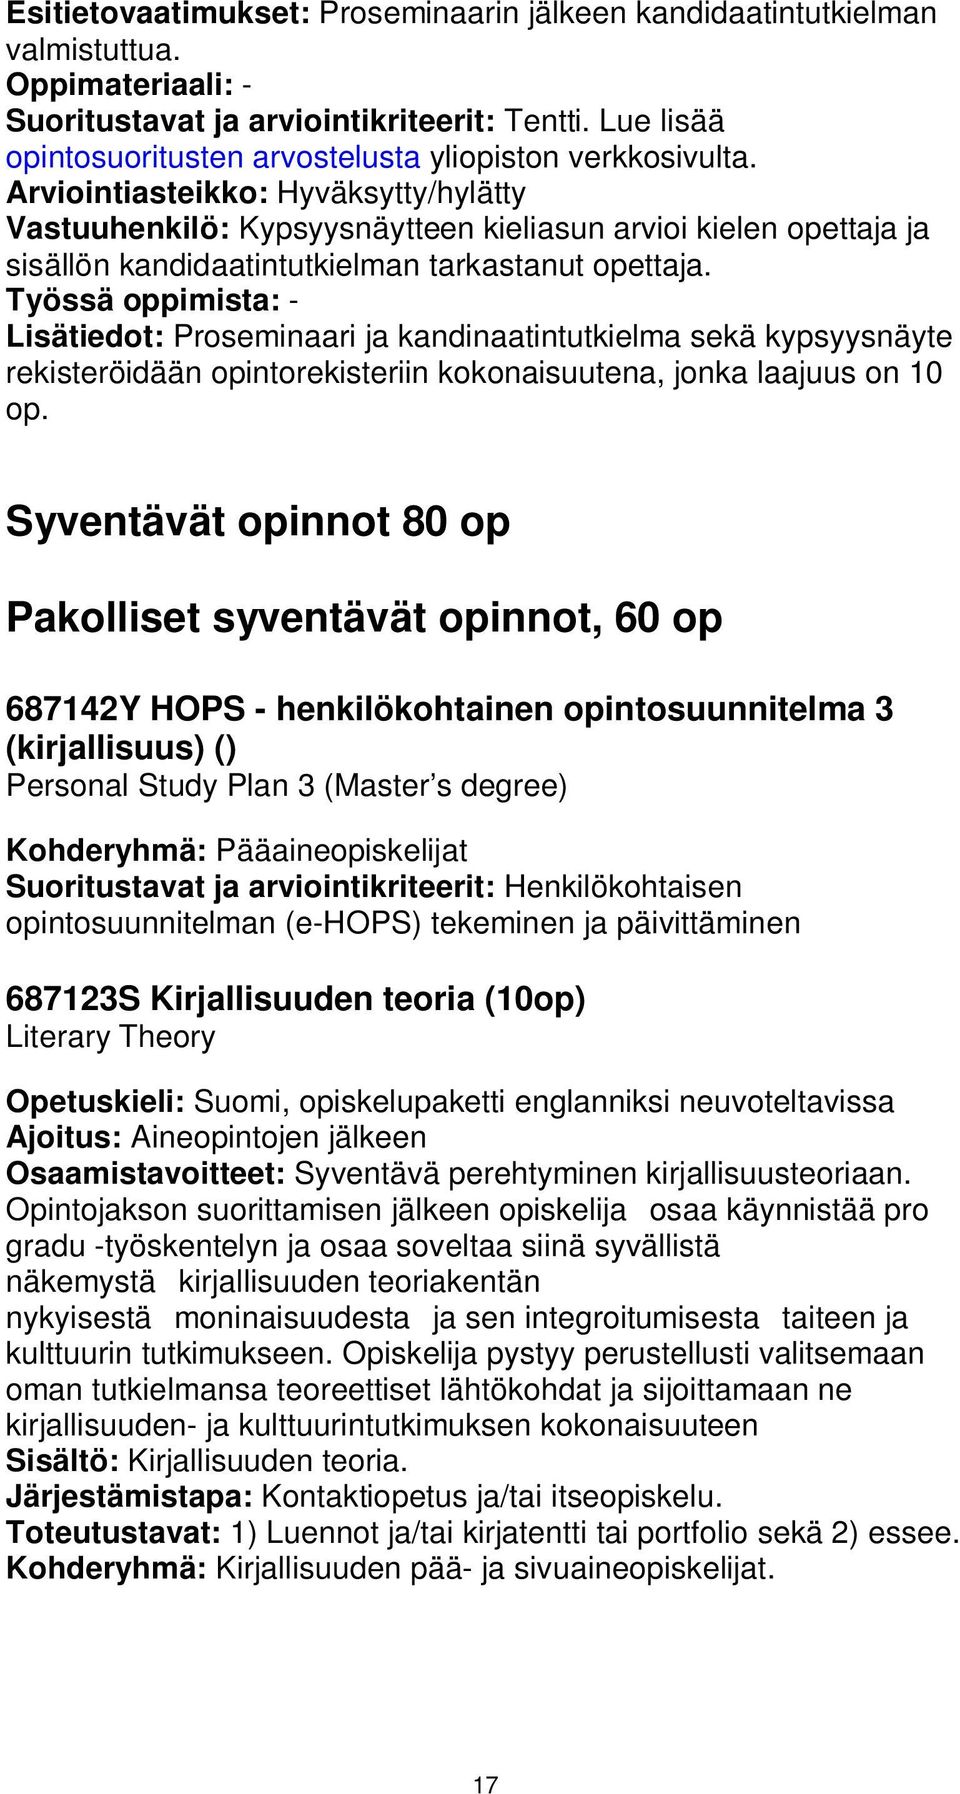 Arviointiasteikko: Hyväksytty/hylätty Vastuuhenkilö: Kypsyysnäytteen kieliasun arvioi kielen opettaja ja sisällön kandidaatintutkielman tarkastanut opettaja.